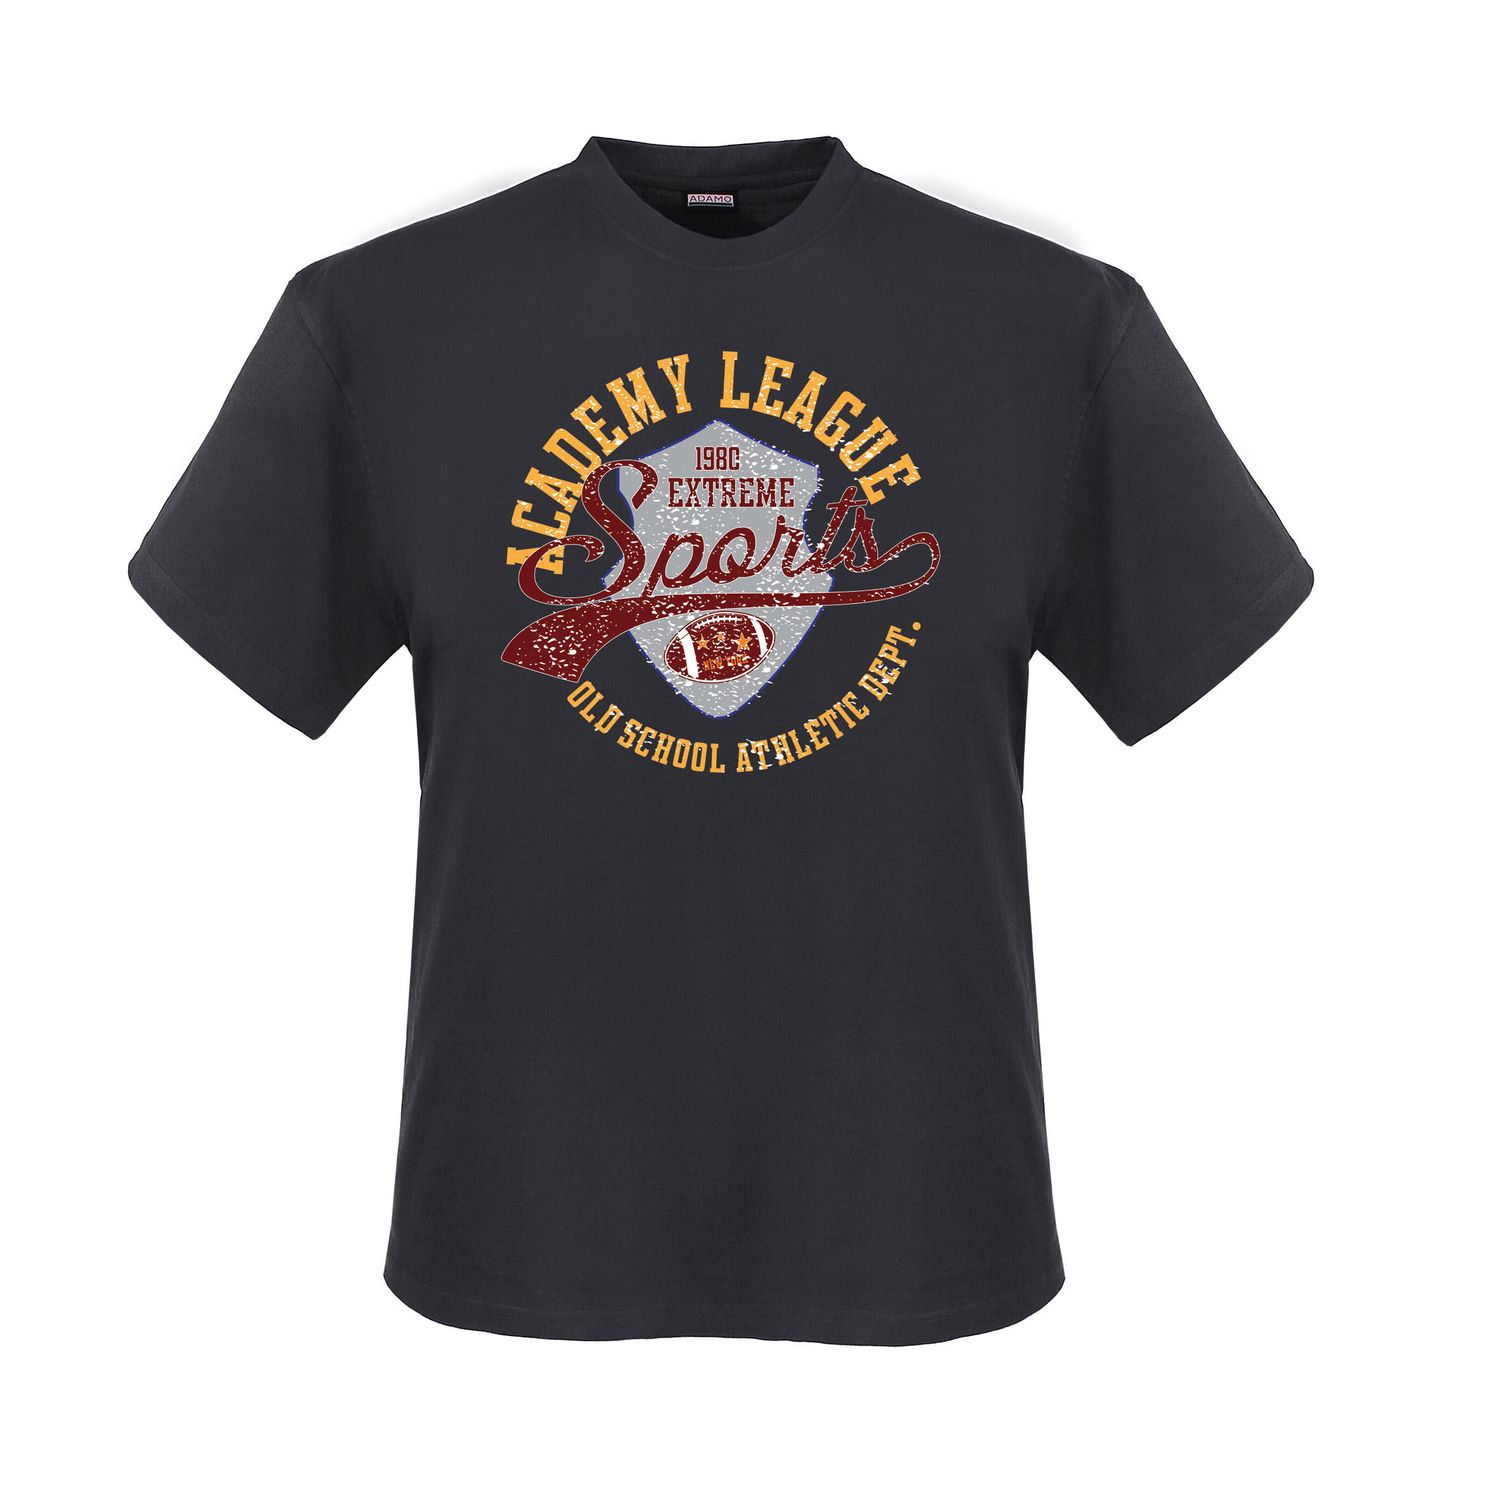 T-shirt "ACADEMY LEAGUE" imprimé en anthracite pour homme de ADAMO 2XL-12XL/4XLT